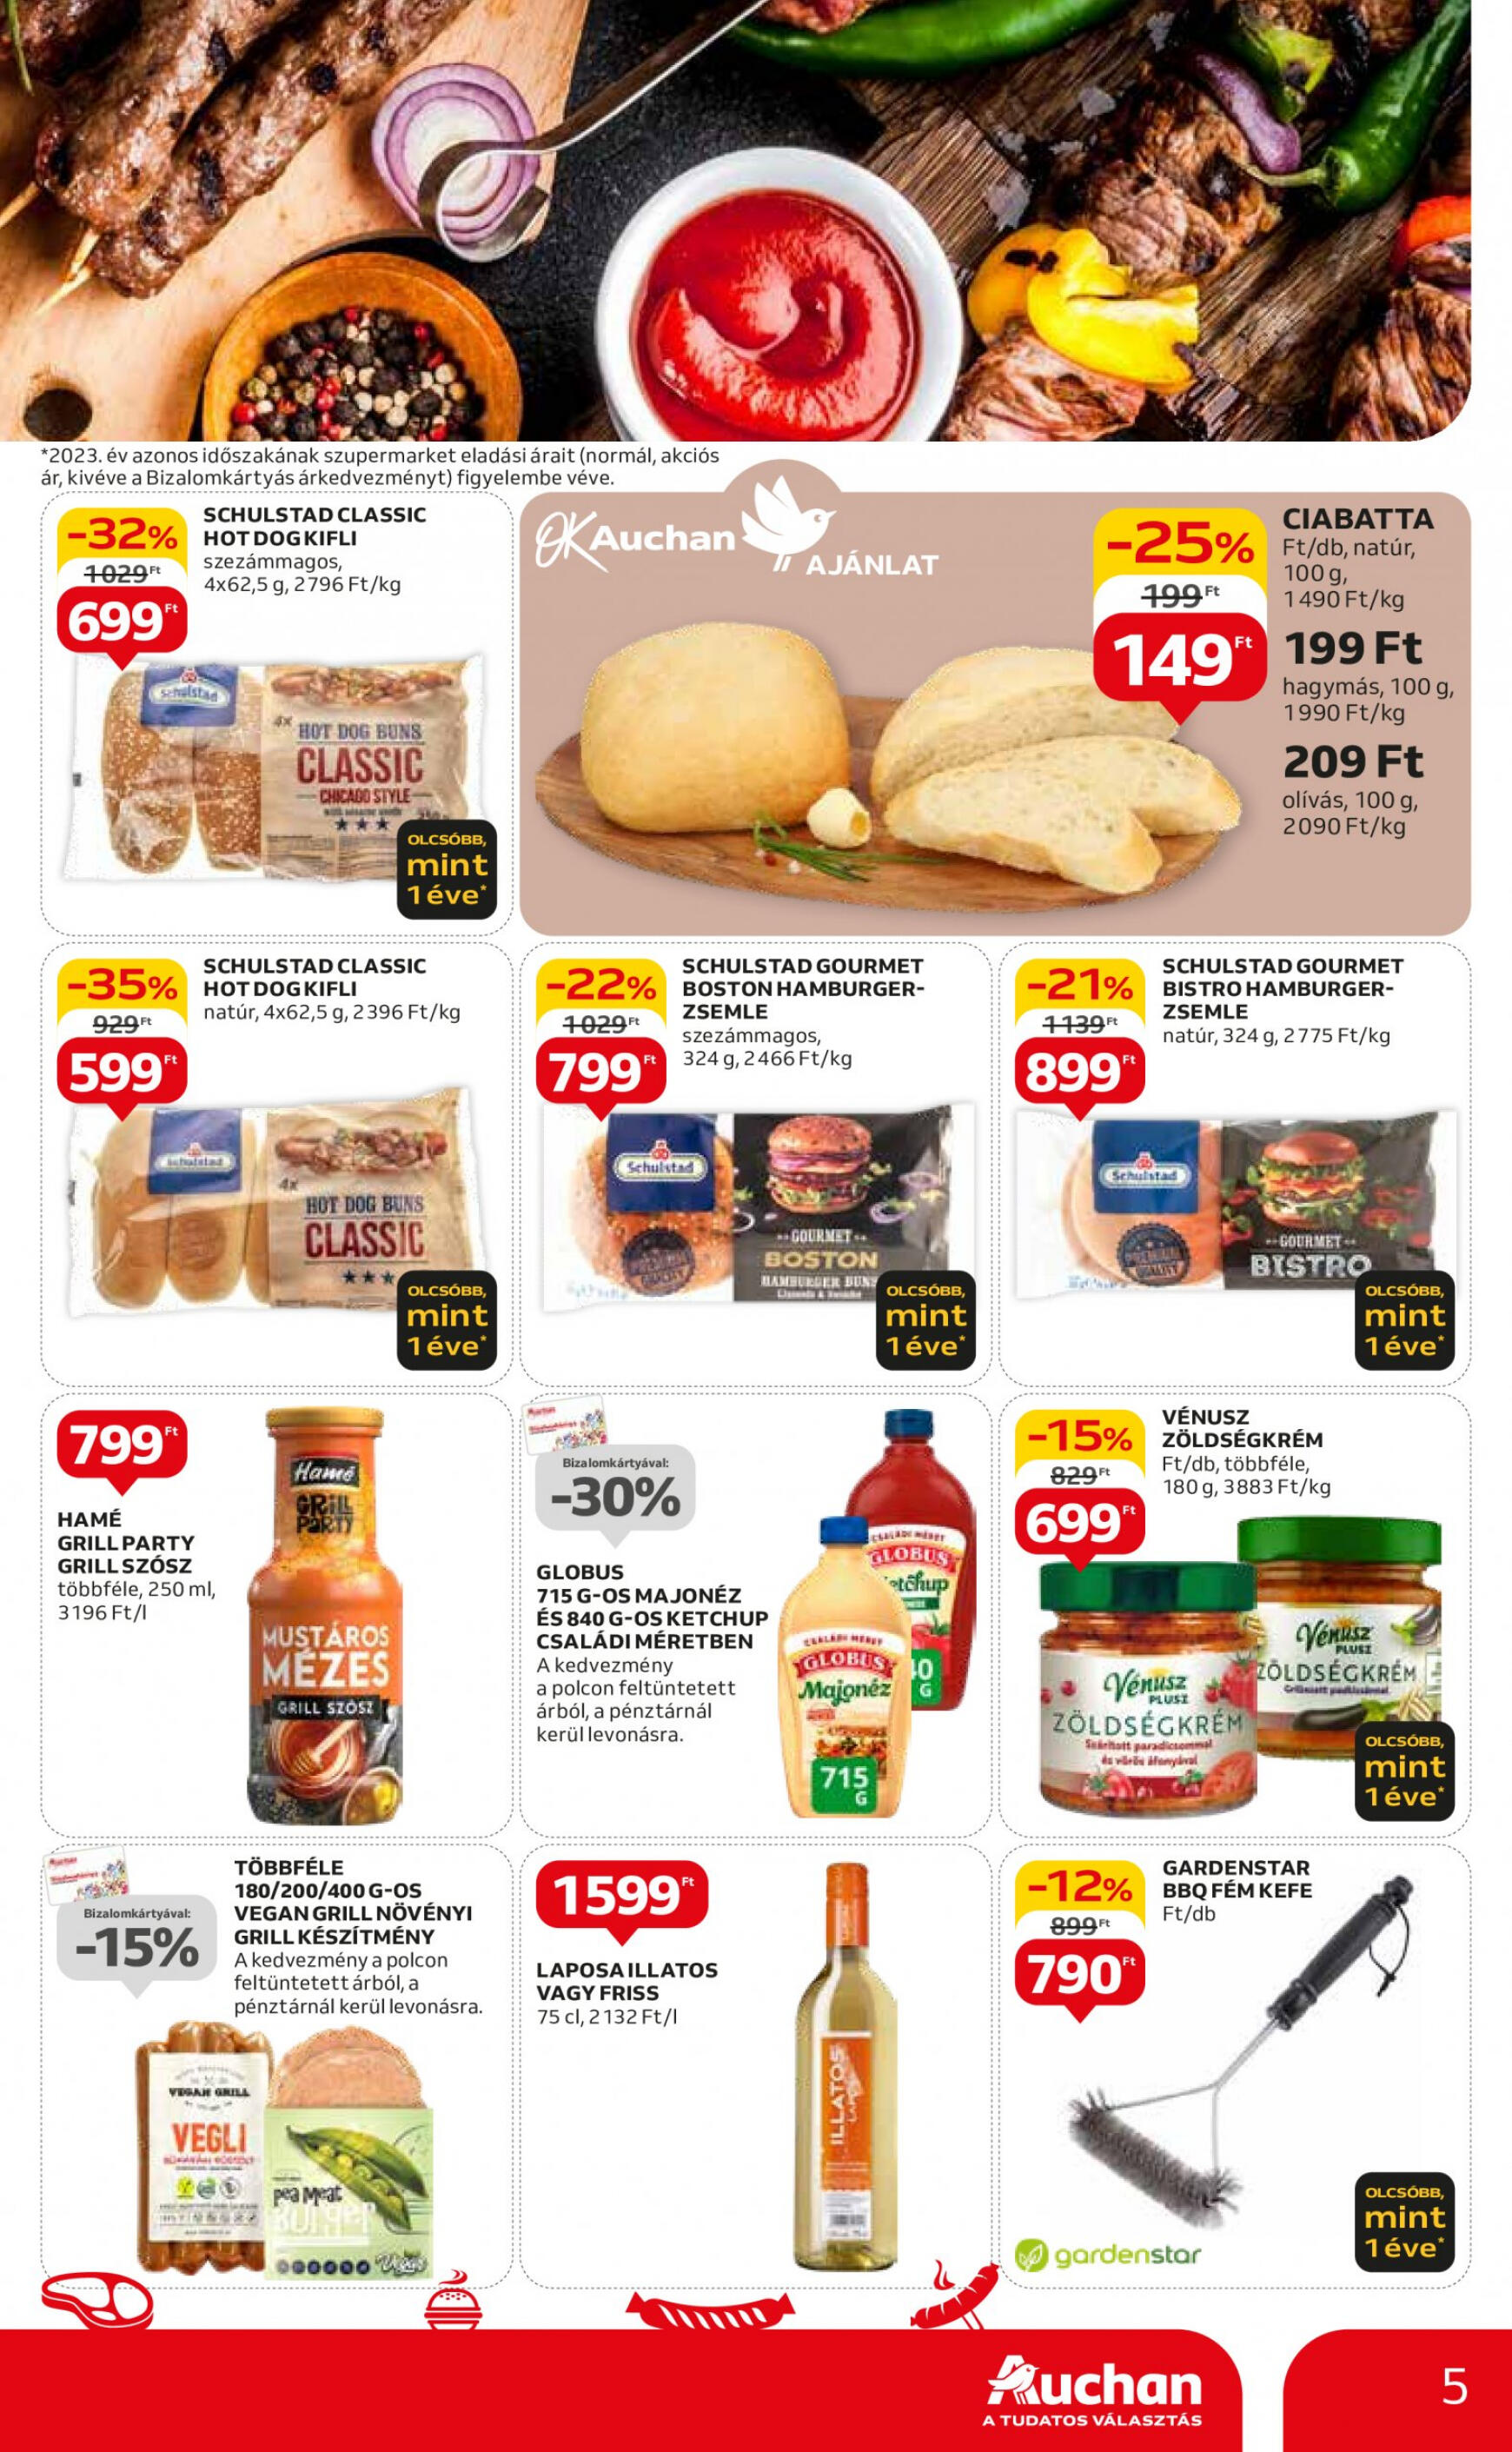 auchan - Aktuális újság Auchan szupermarket 05.09. - 05.15. - page: 5